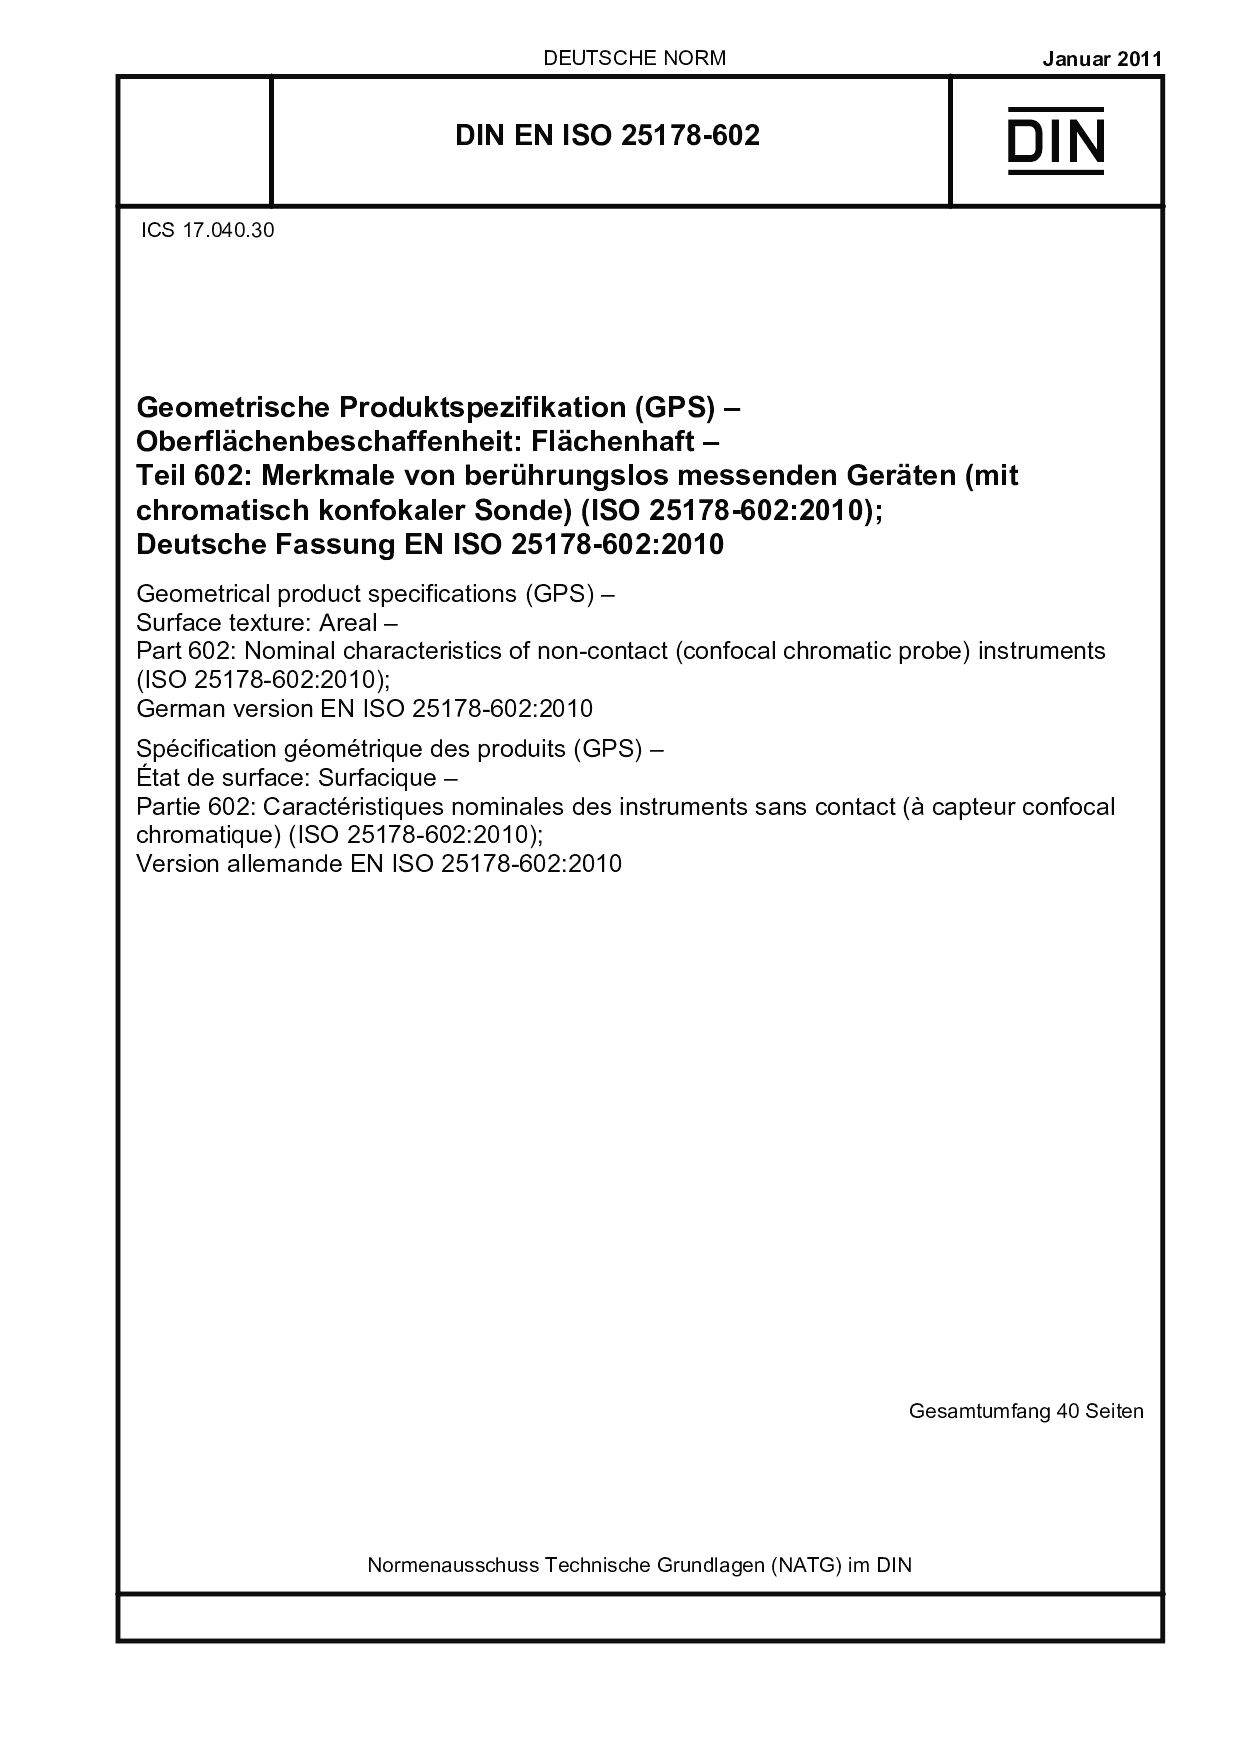 DIN EN ISO 25178-602:2011封面图